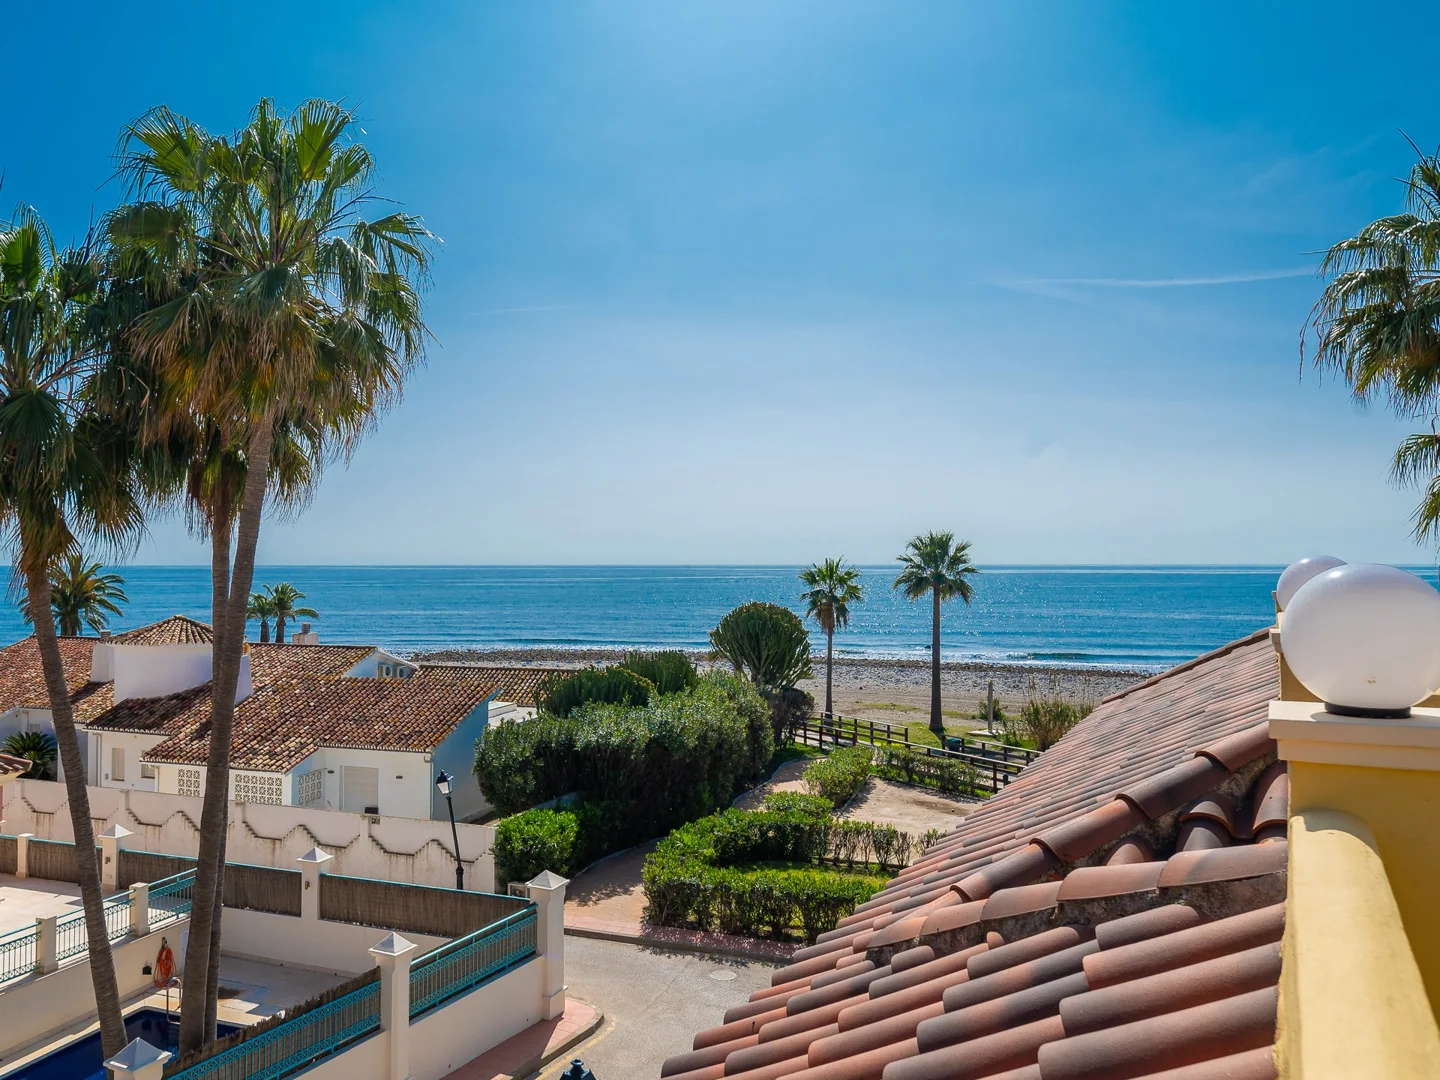 Villa exclusiva en Puerto Banus a pasos de la playa con vistas al mar